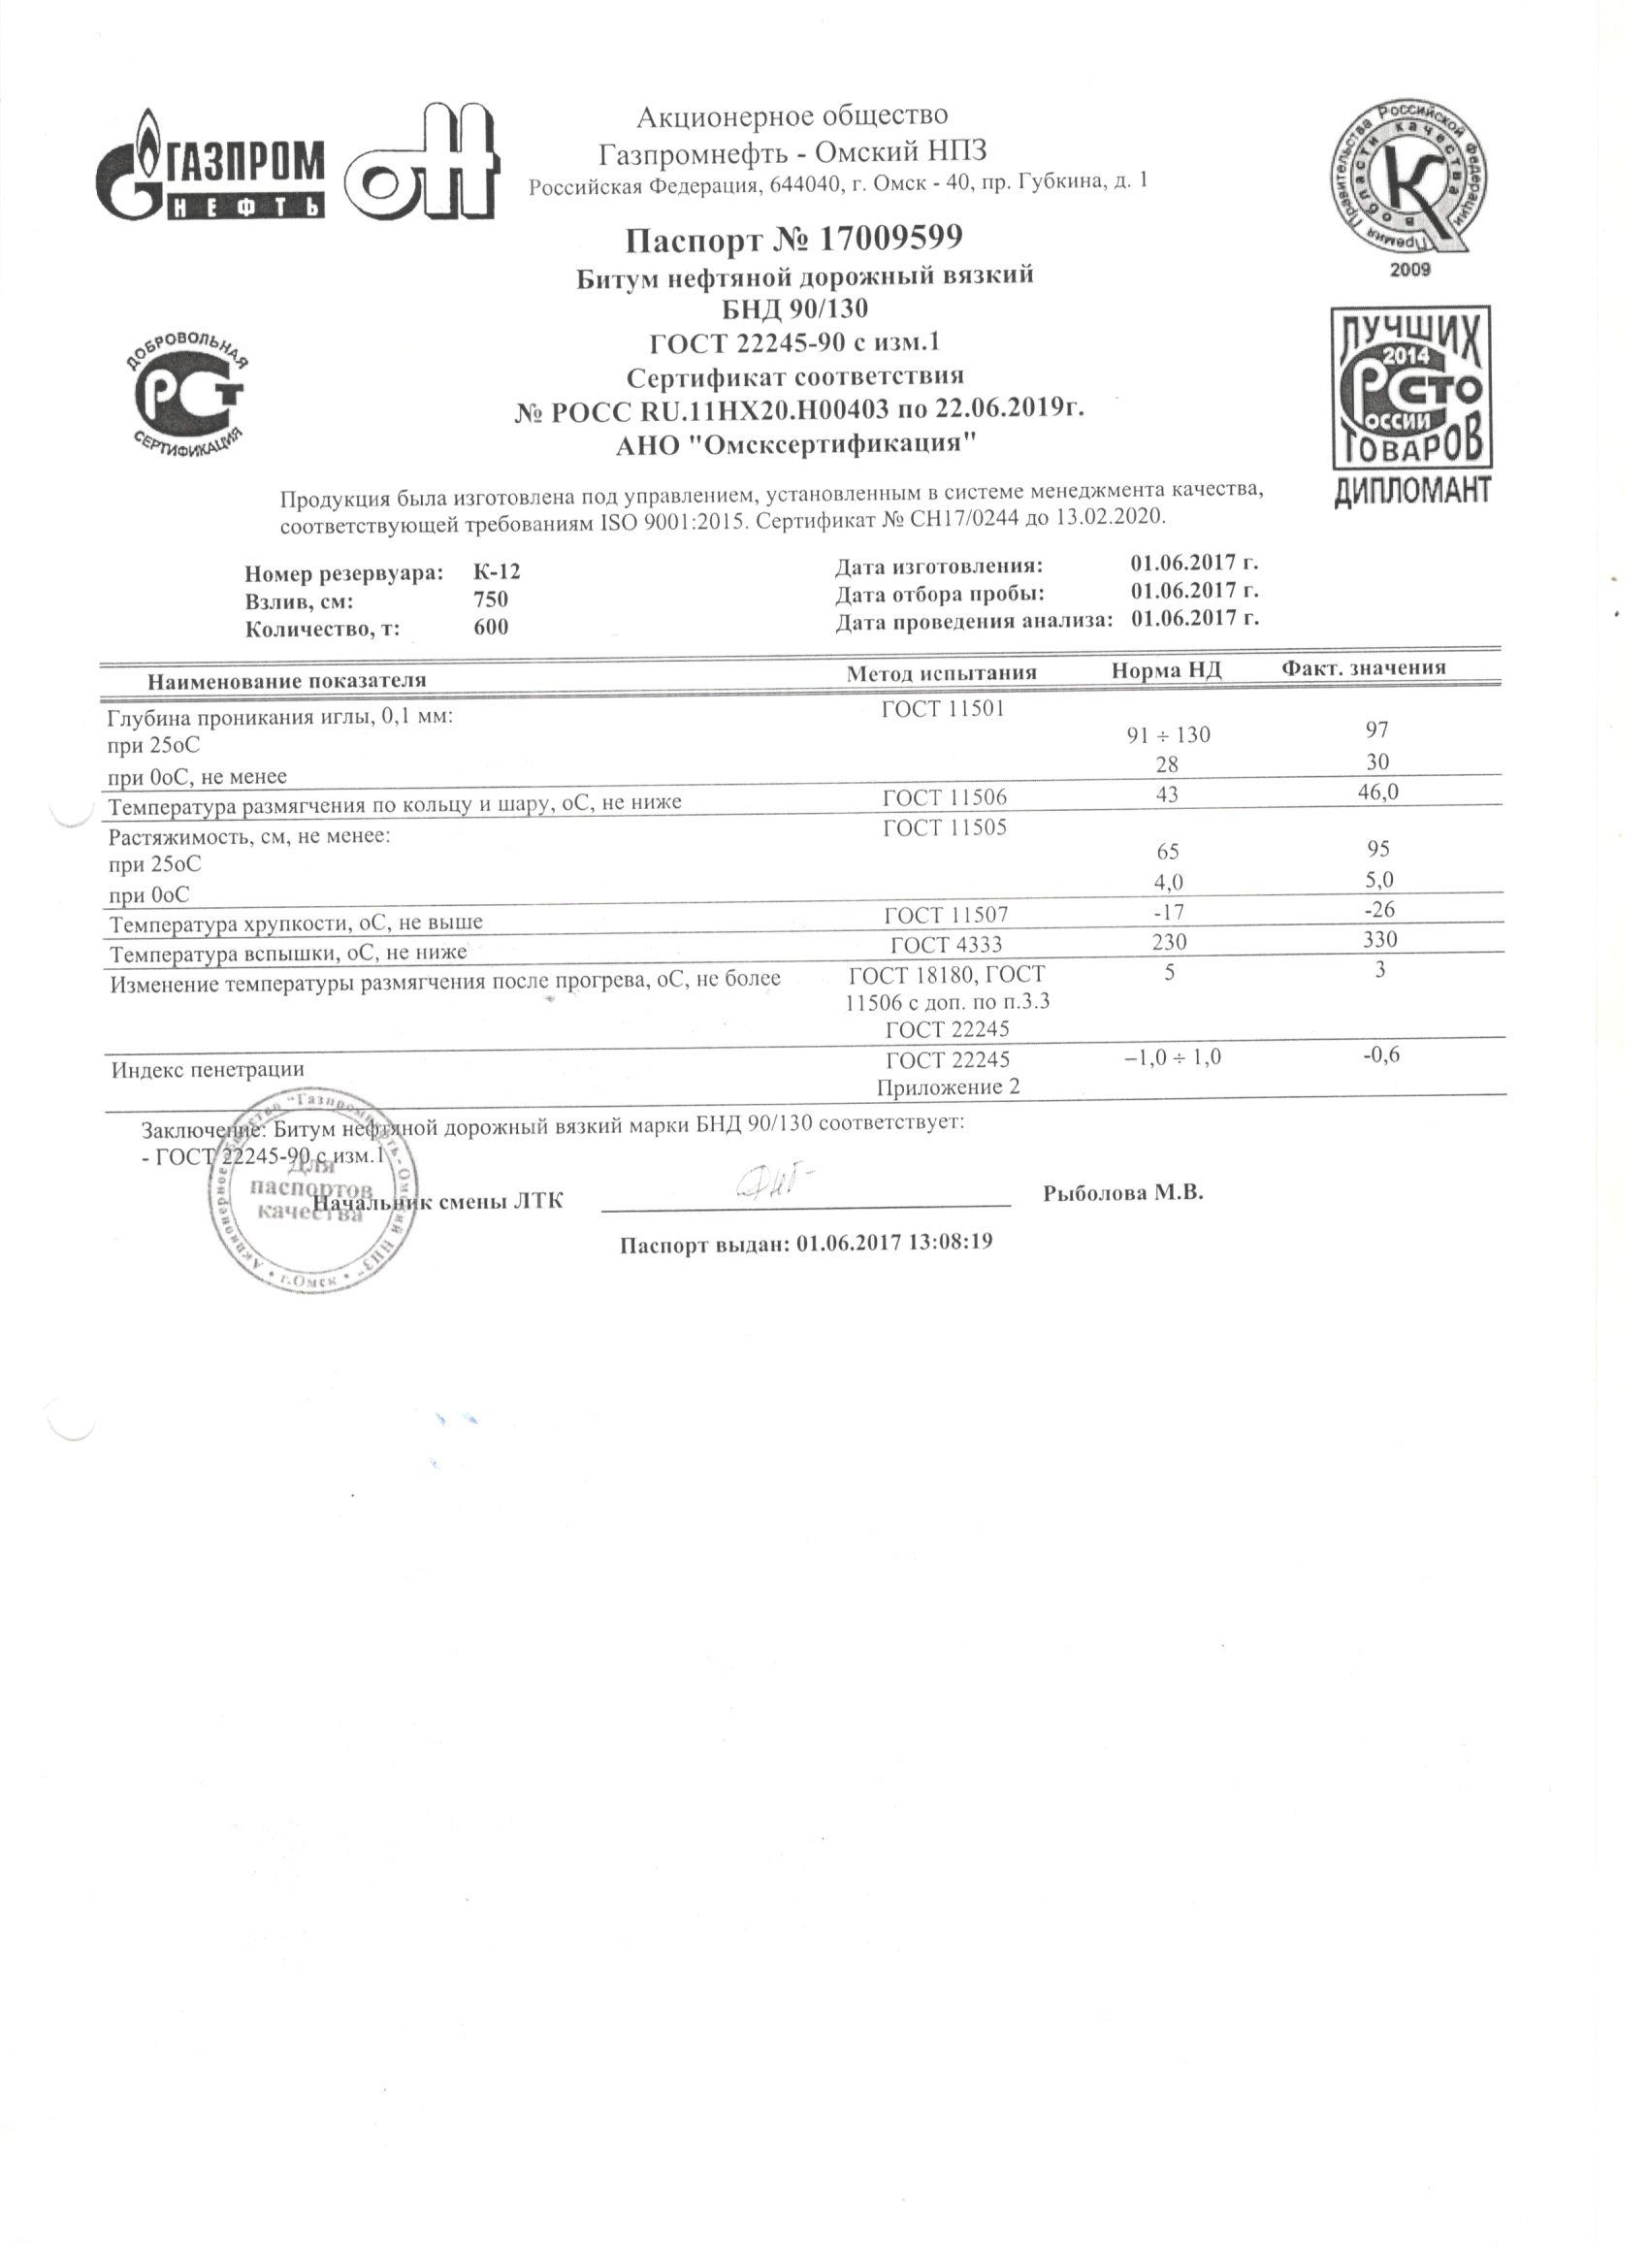 Битум нефтяной дорожный БНД 60/90 сертификат соответствия.